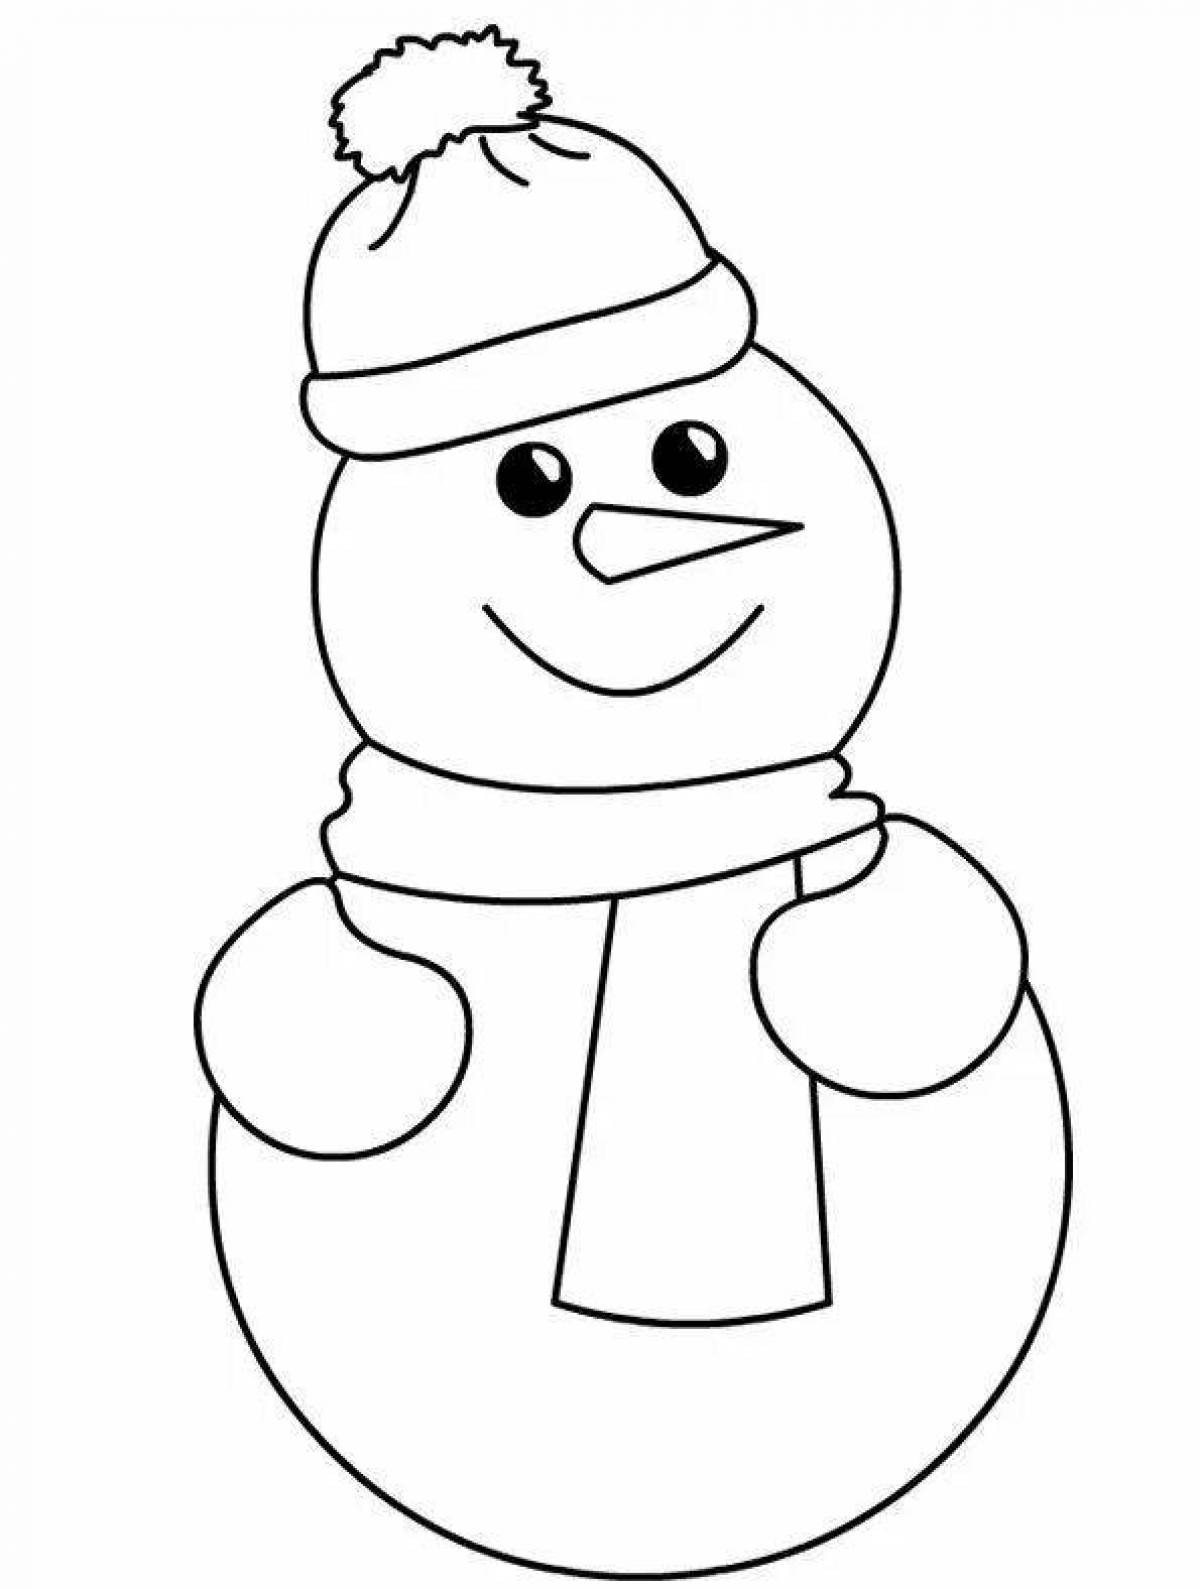 Раскраска юмористический снеговик